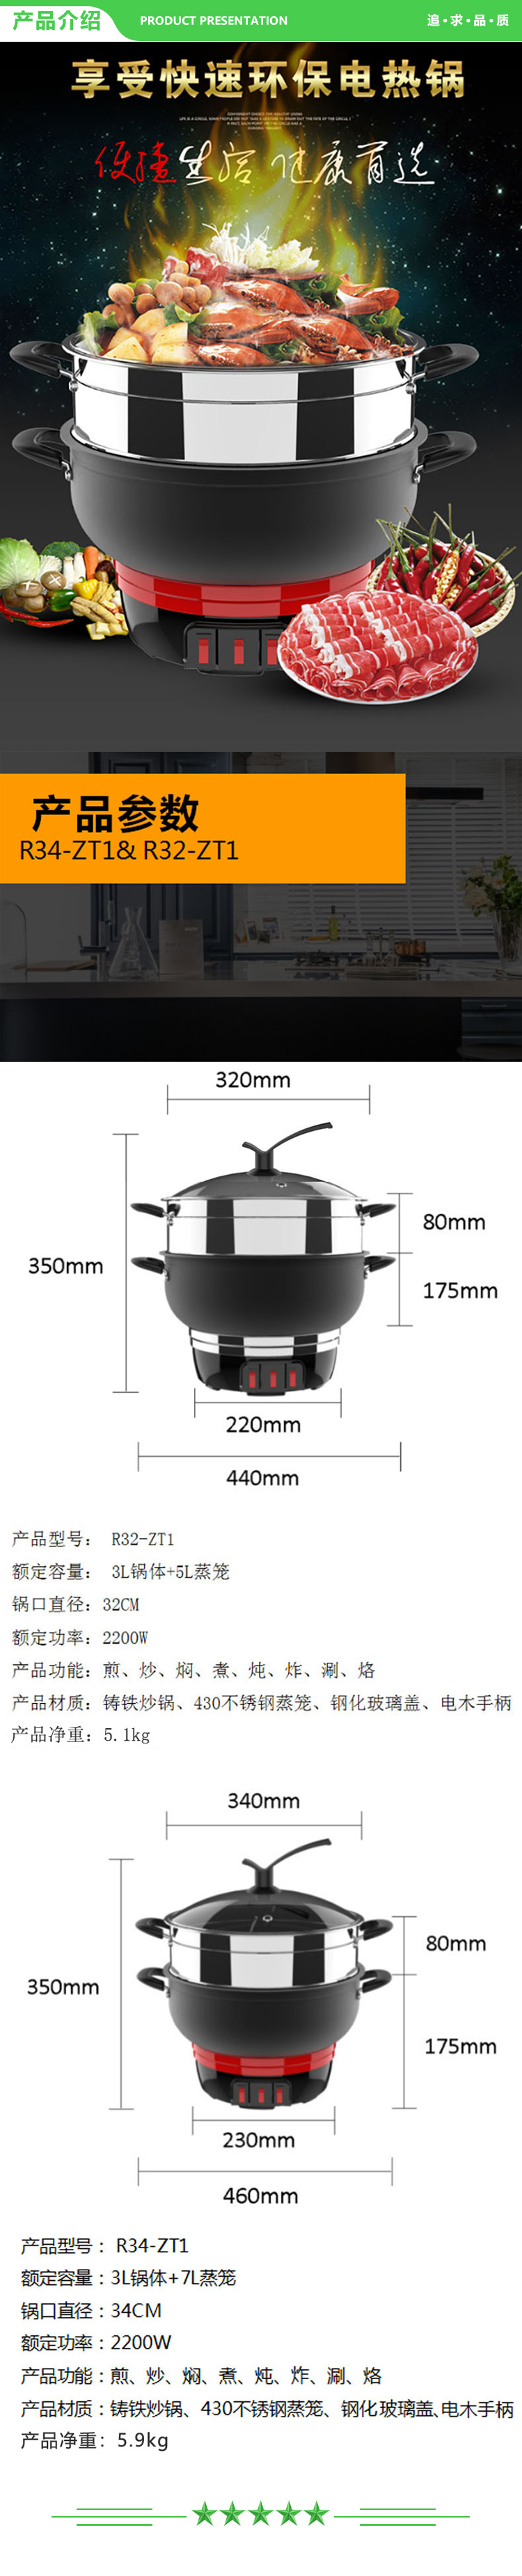 九阳 Joyoung R32-ZT1 R34-ZT1 多用锅家用大容量电蒸锅电热锅.jpg